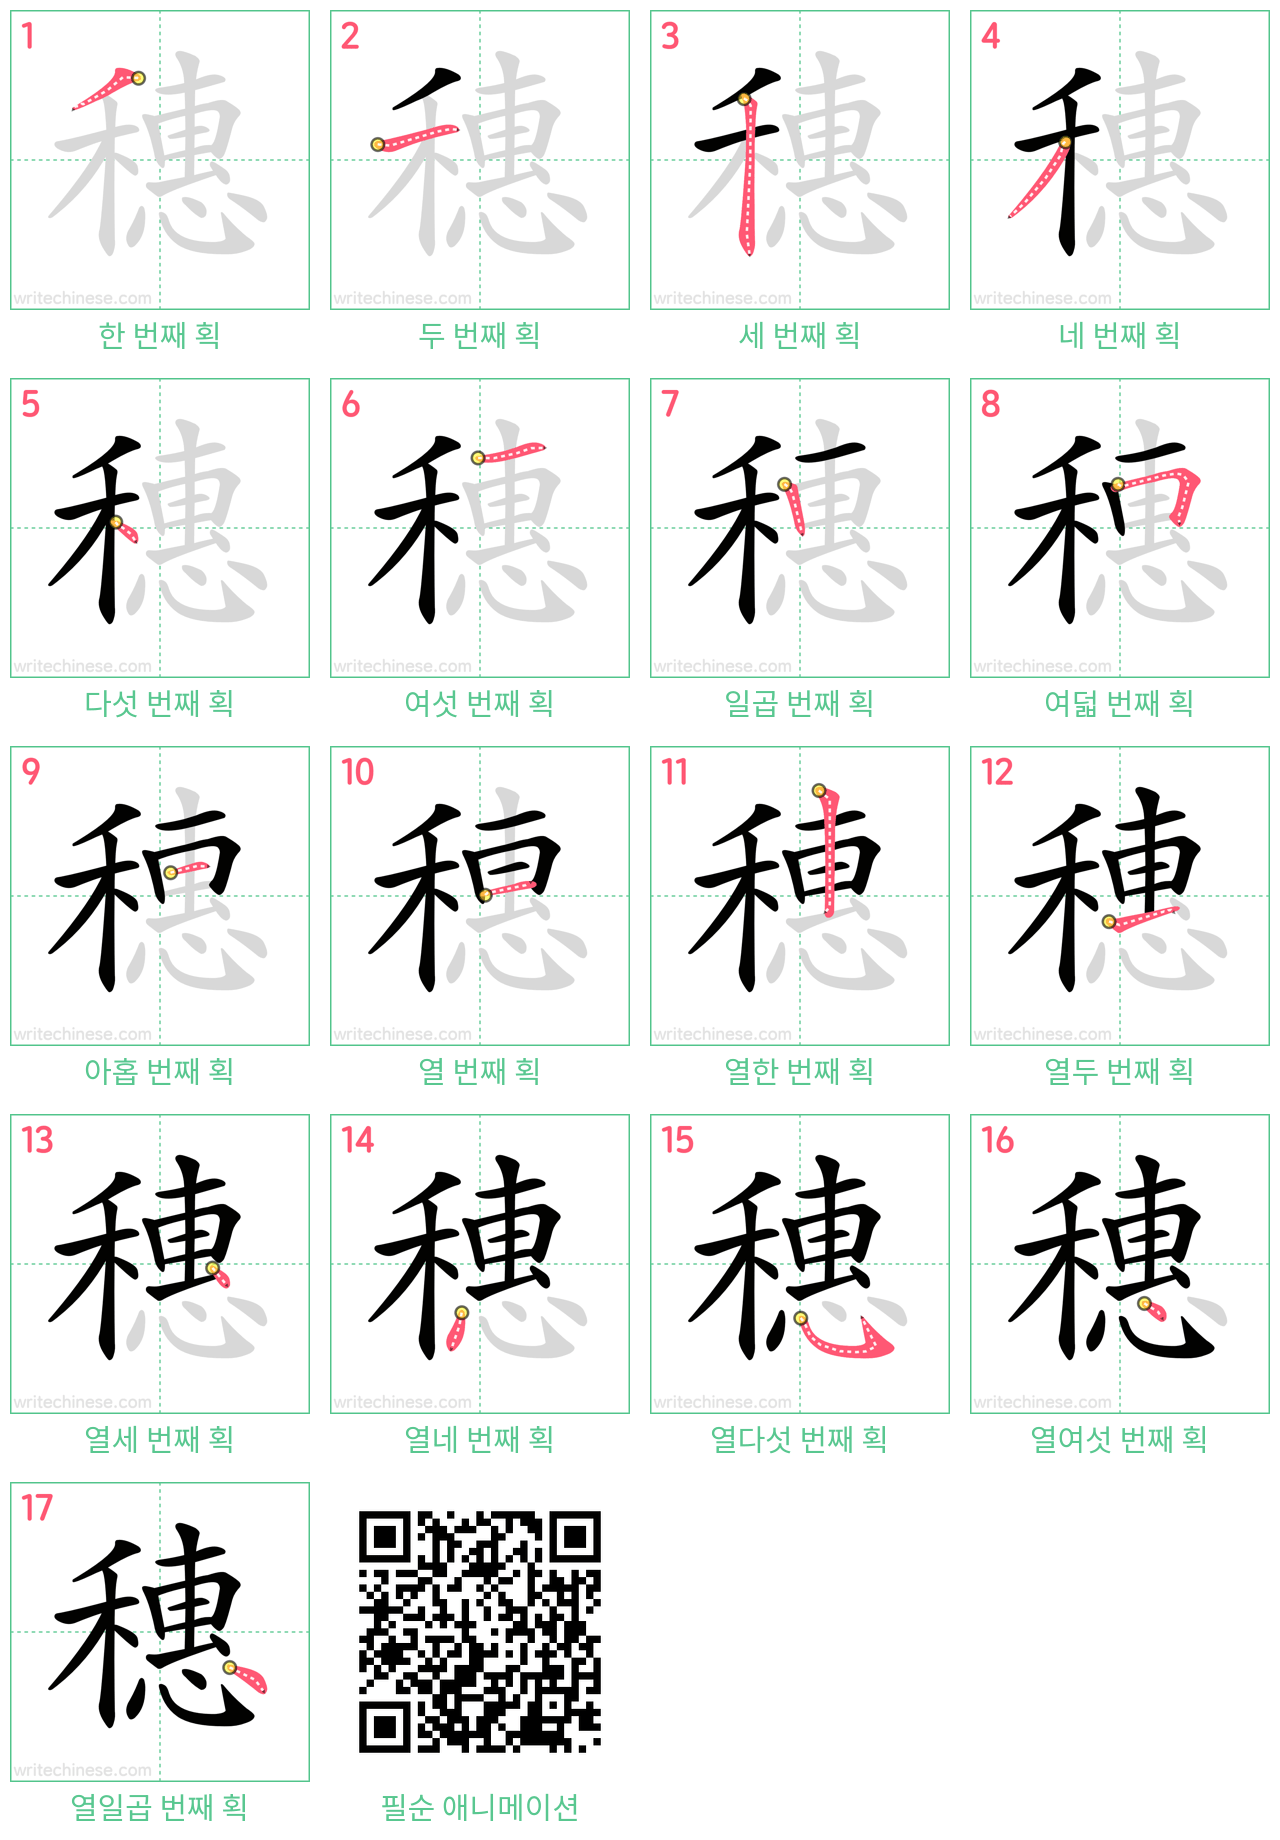 穗 step-by-step stroke order diagrams